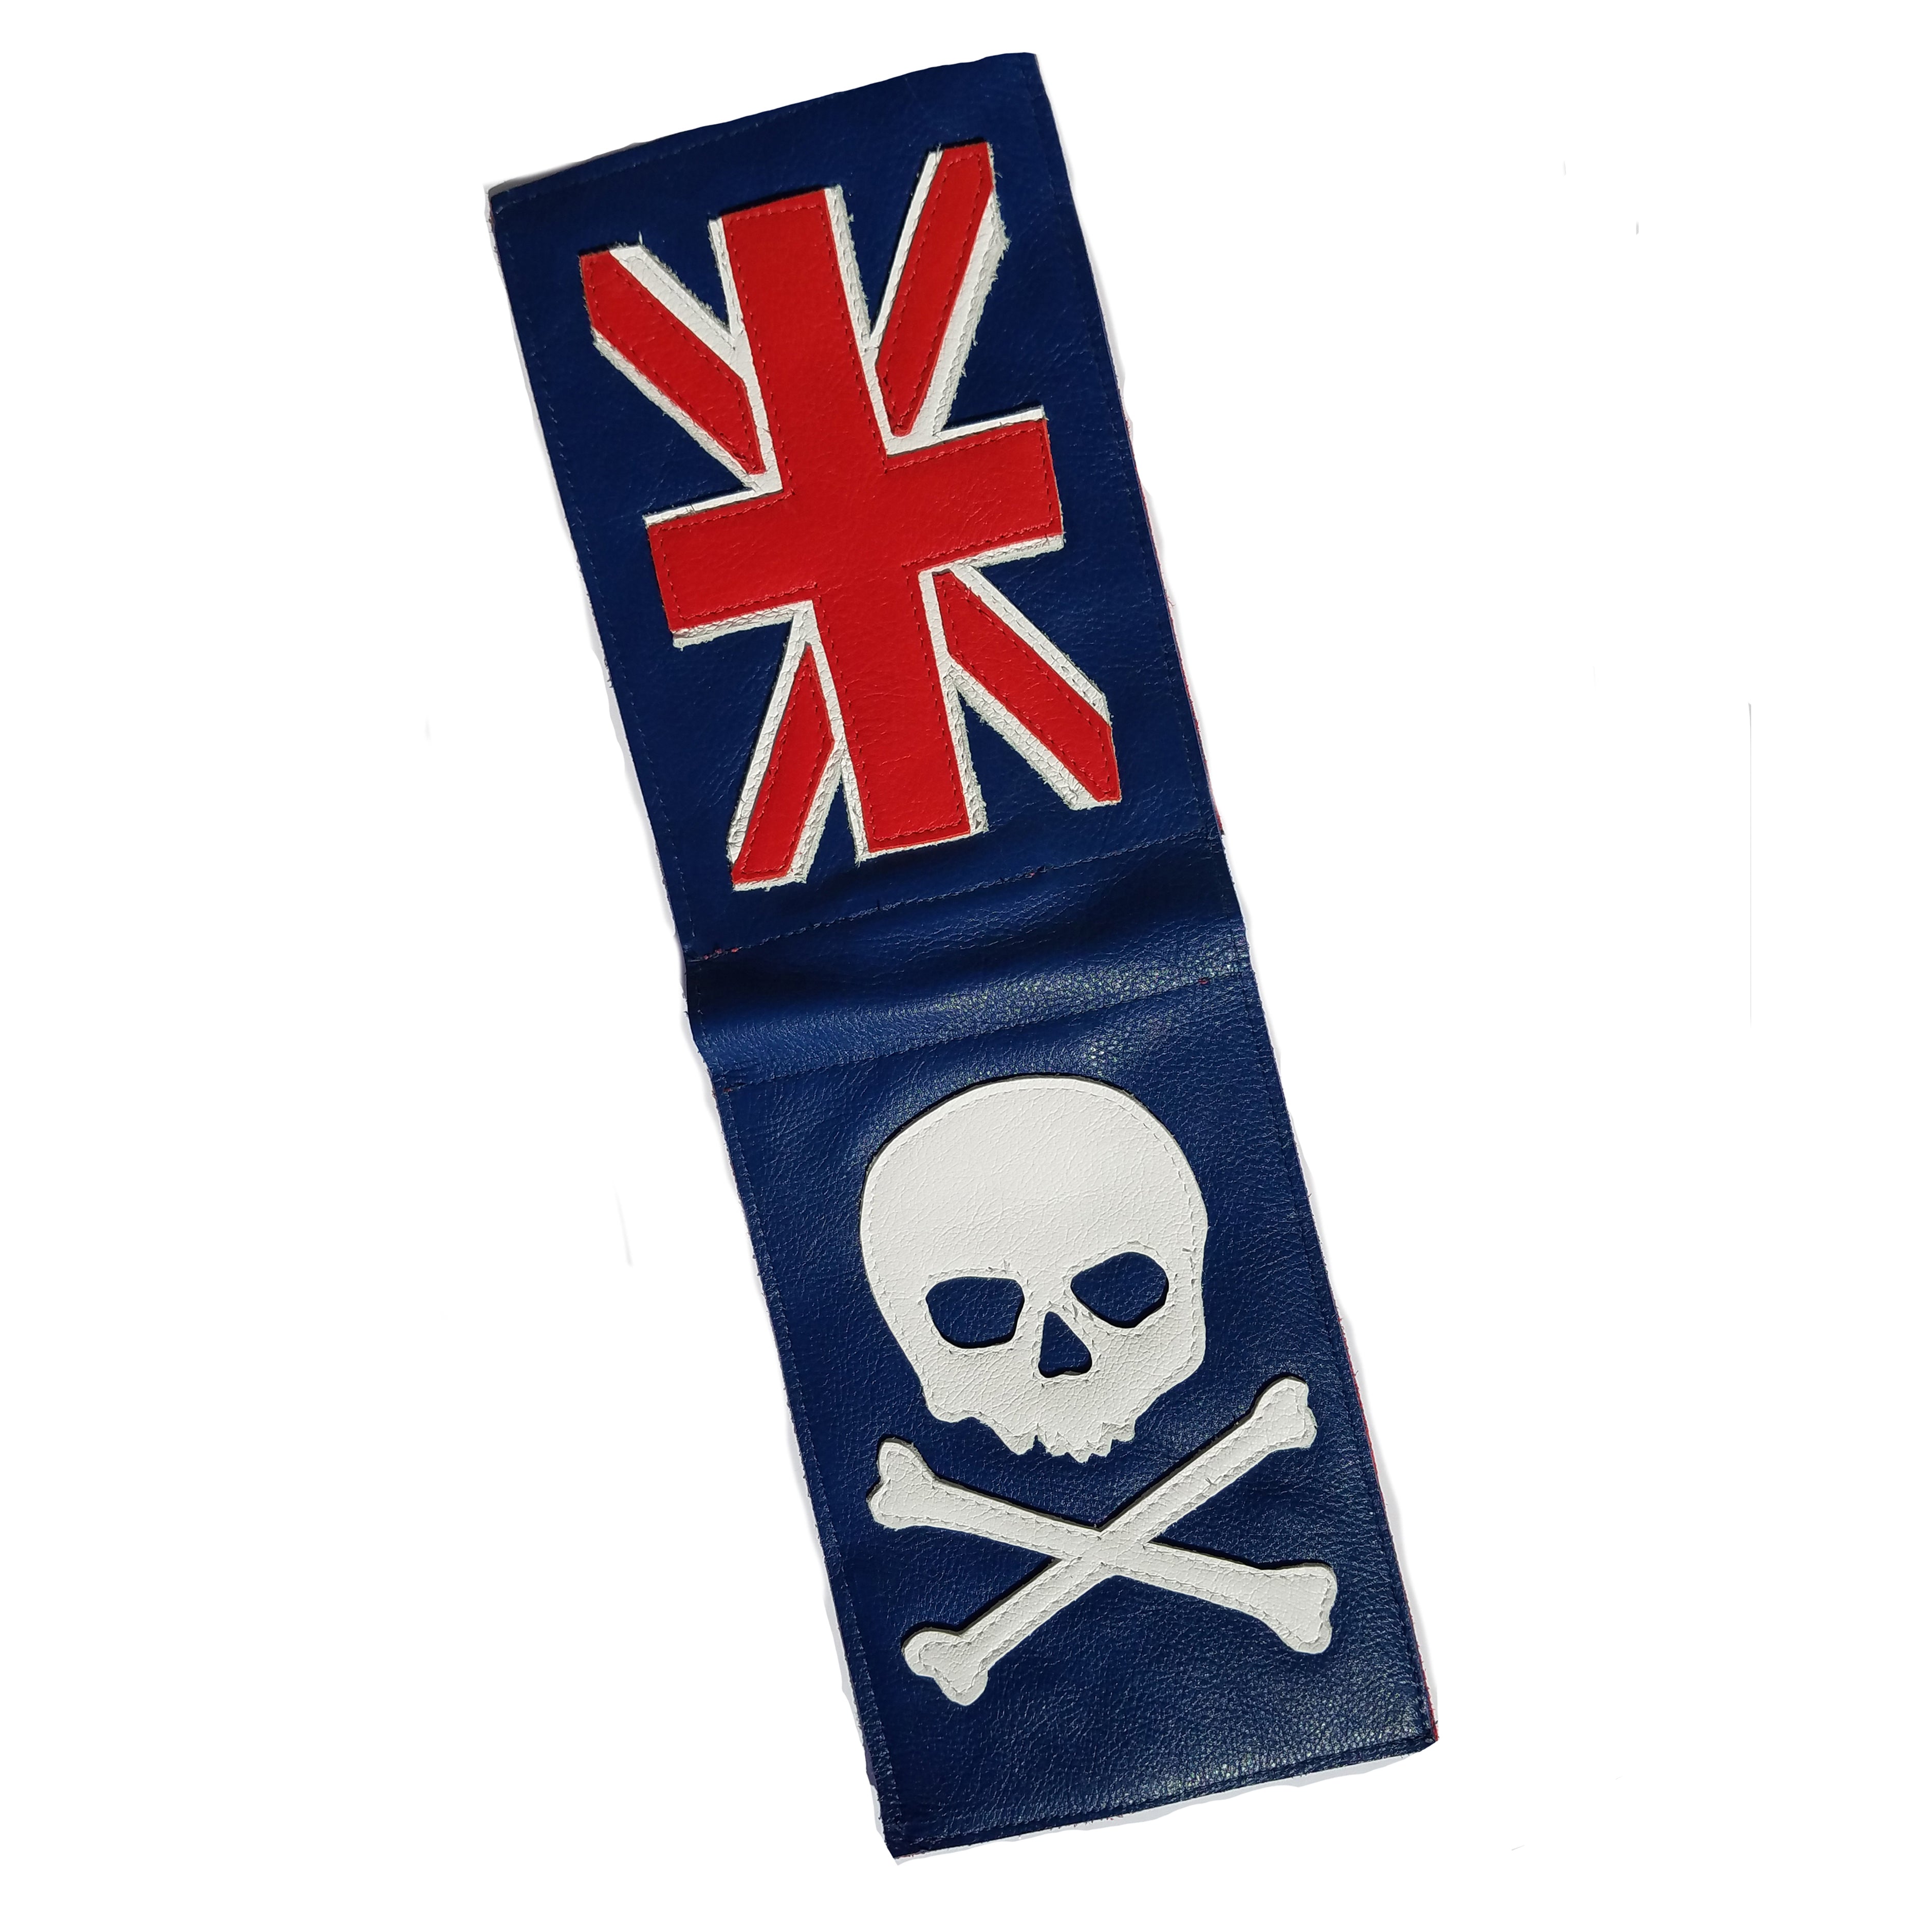 NEW! Union Jack Flag Skull & Bones Scorecard Holder - Robert Mark Golf